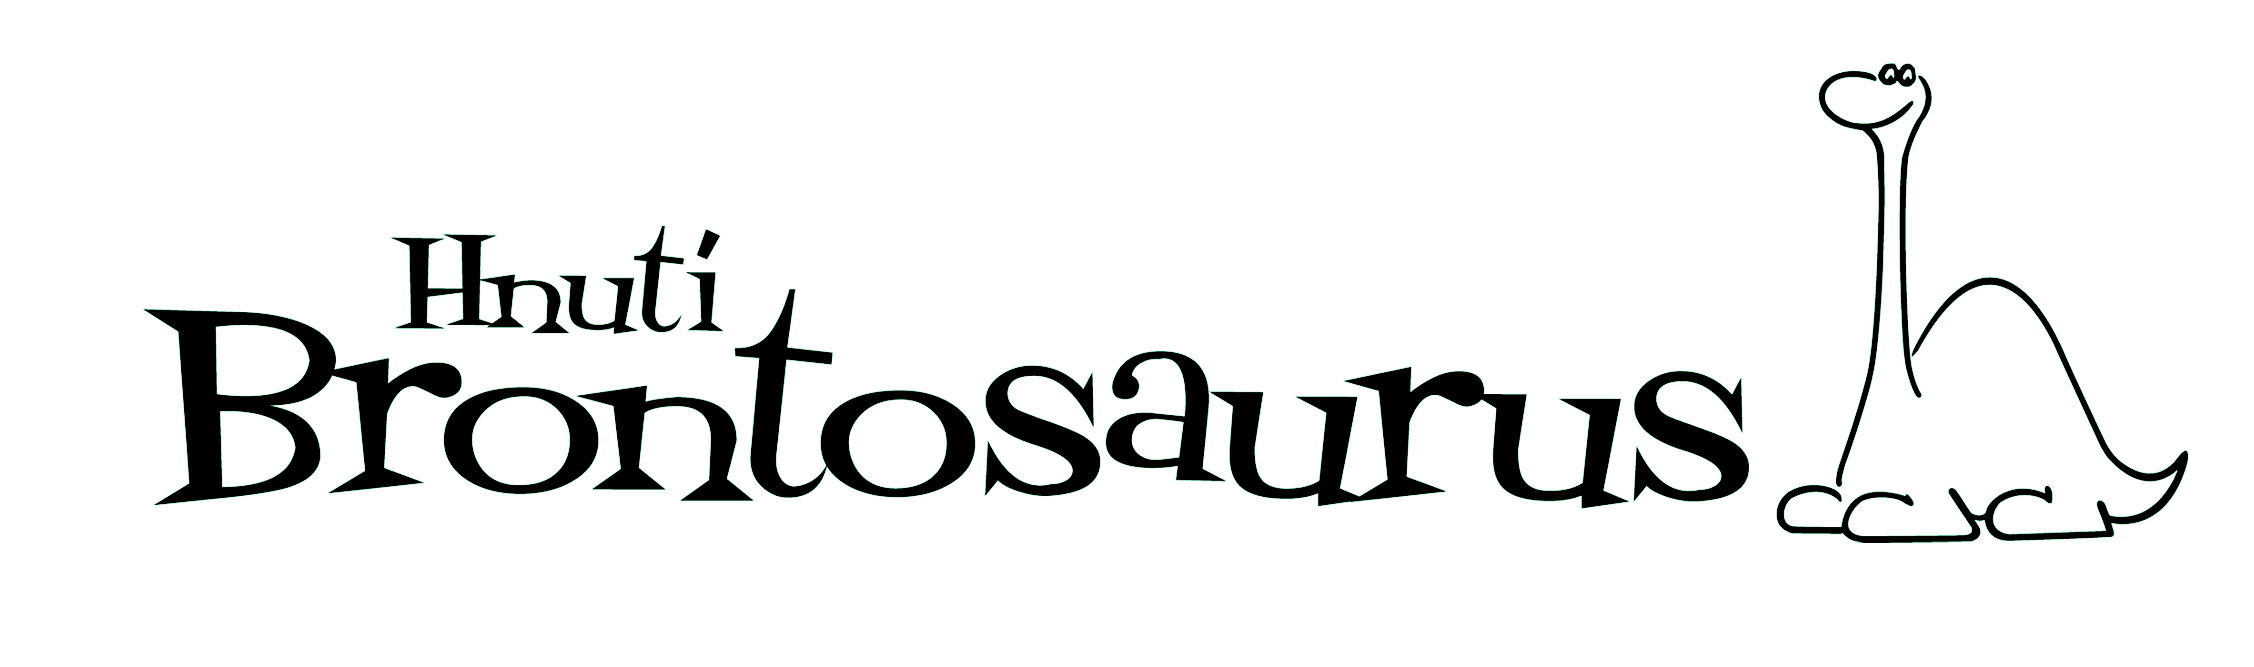 Logo Hnutí Brontosaurus